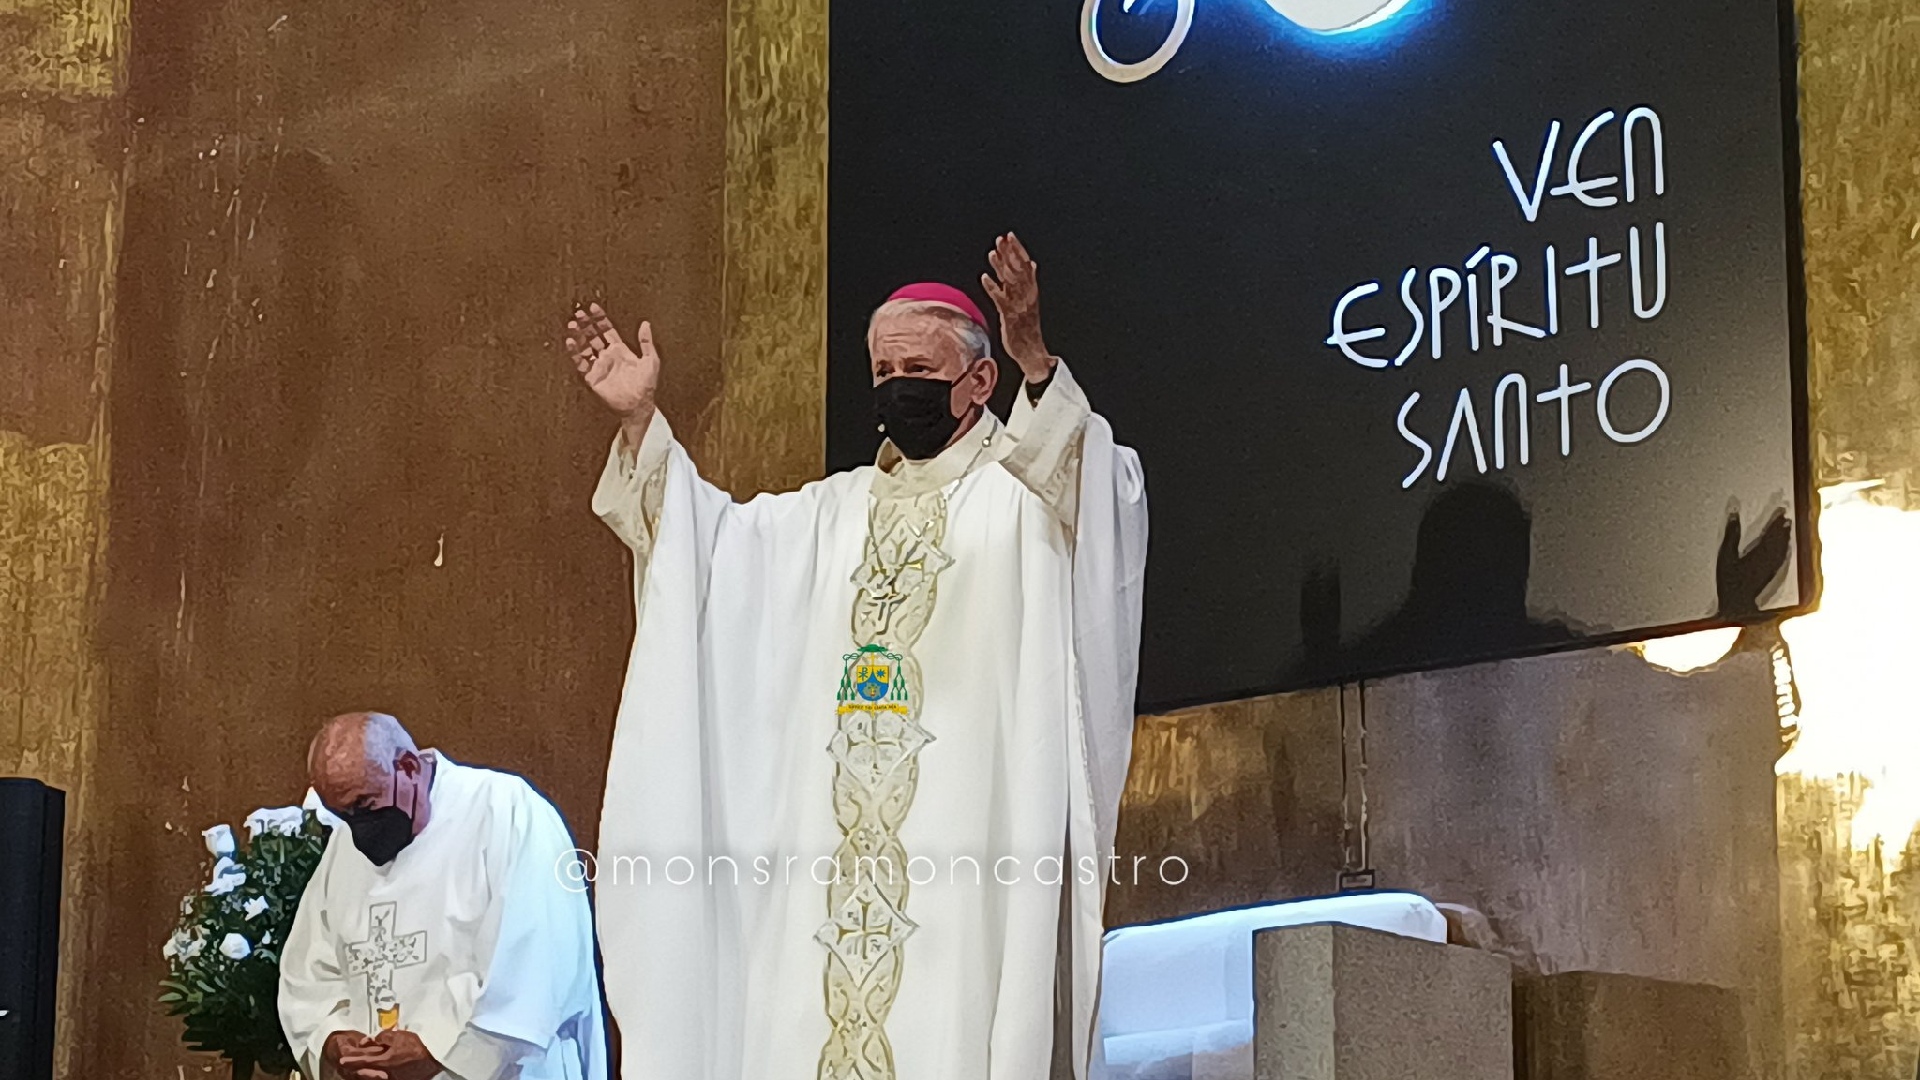 El obispo Castro criticó la política de seguridad de AMLO (Foto: Twitter / @MonsRamonCastro)